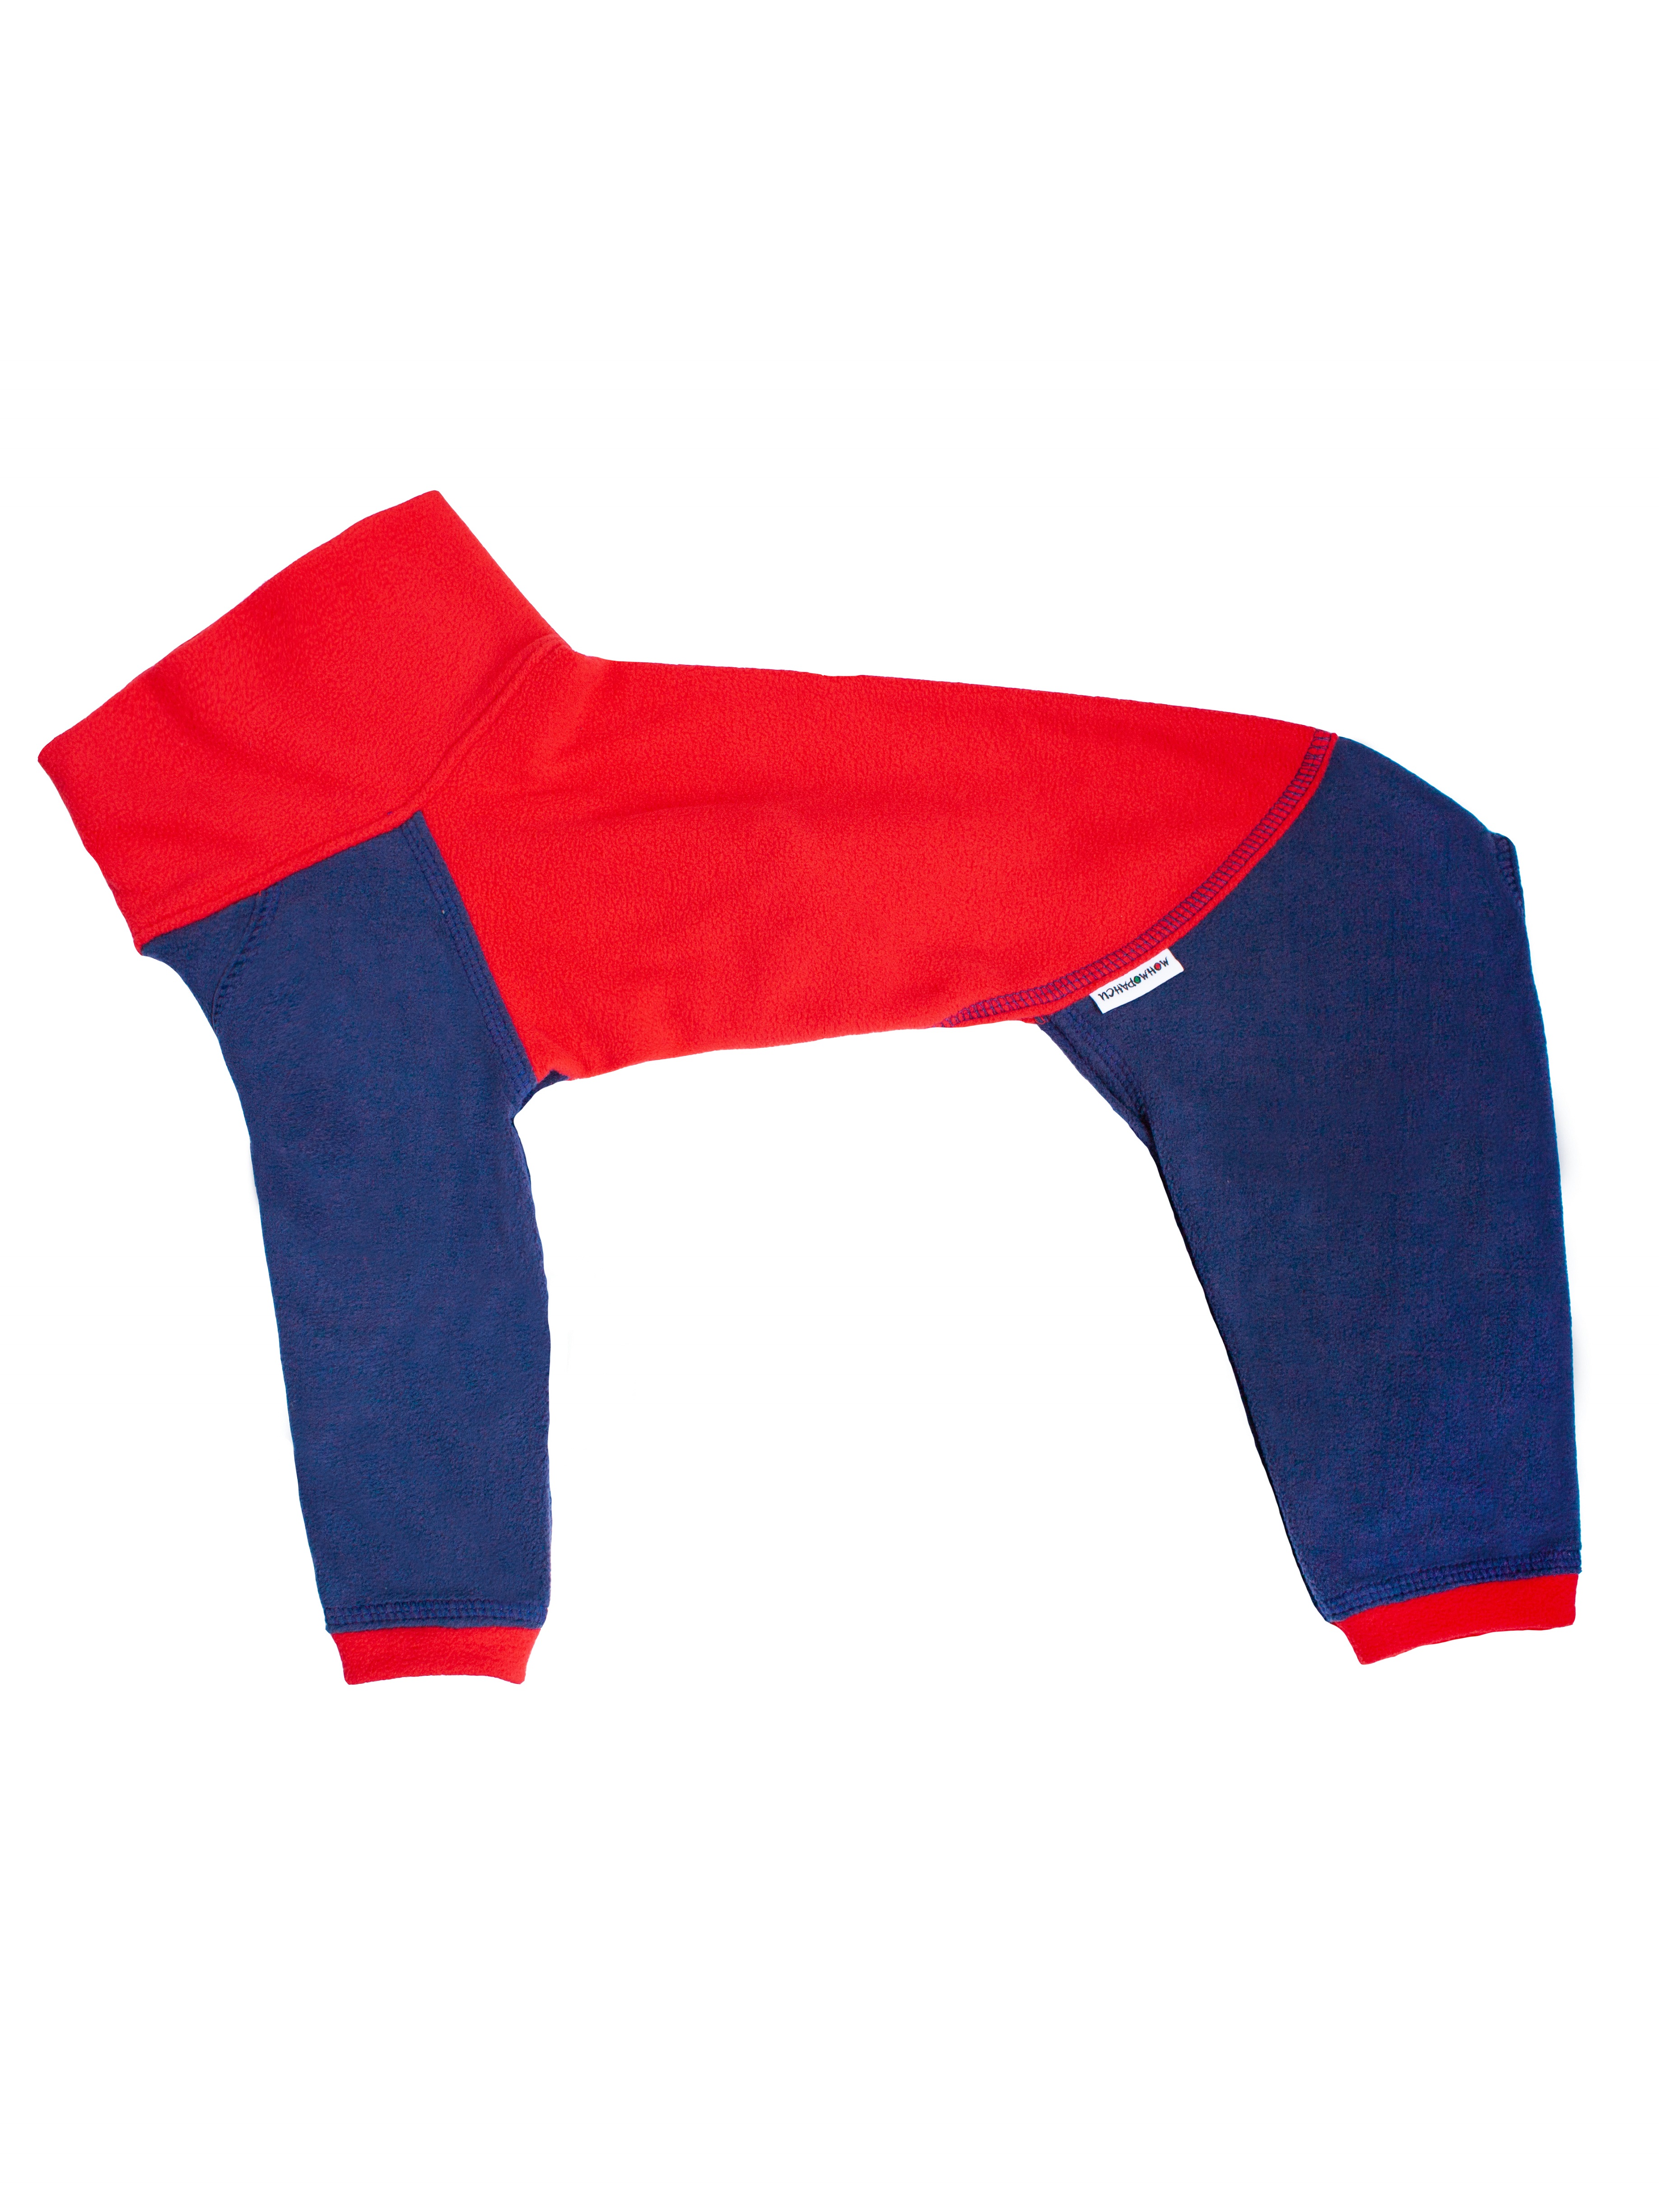 Комбинезон для собак Монморанси, цвет красный, синий, флис, длина спины 32 см